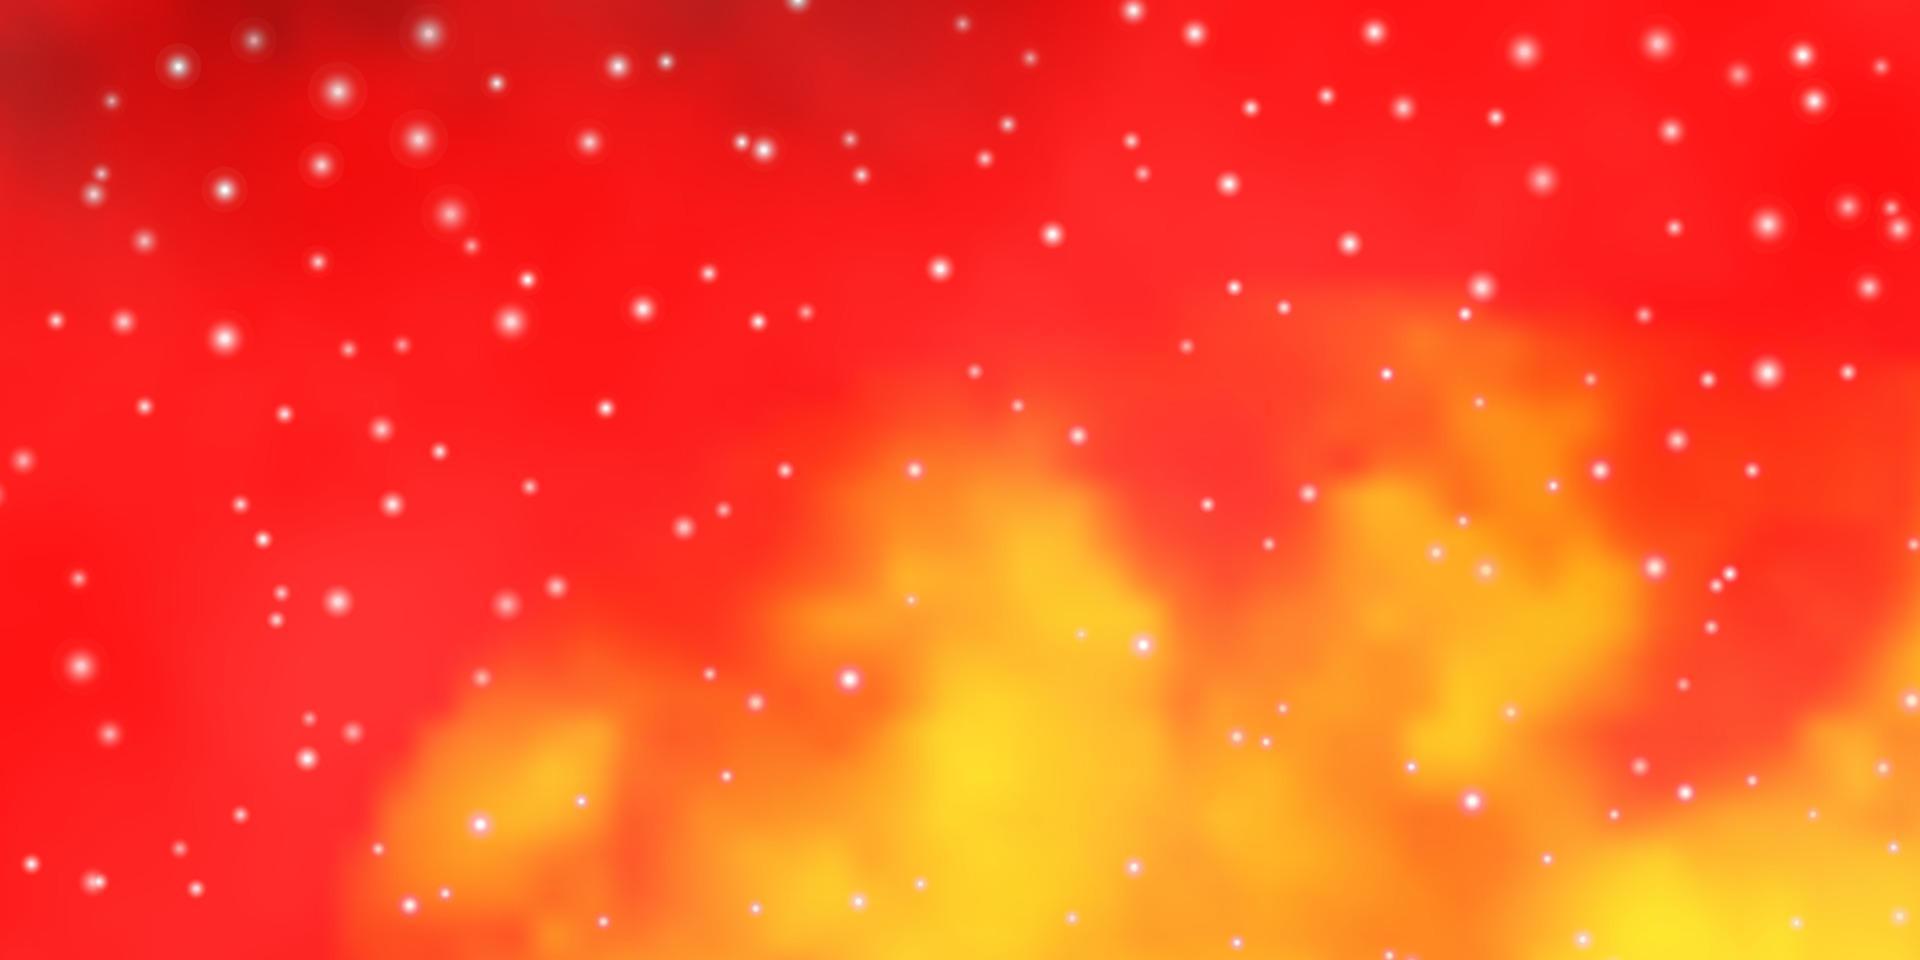 ljusrosa, gul vektorbakgrund med små och stora stjärnor. vektor